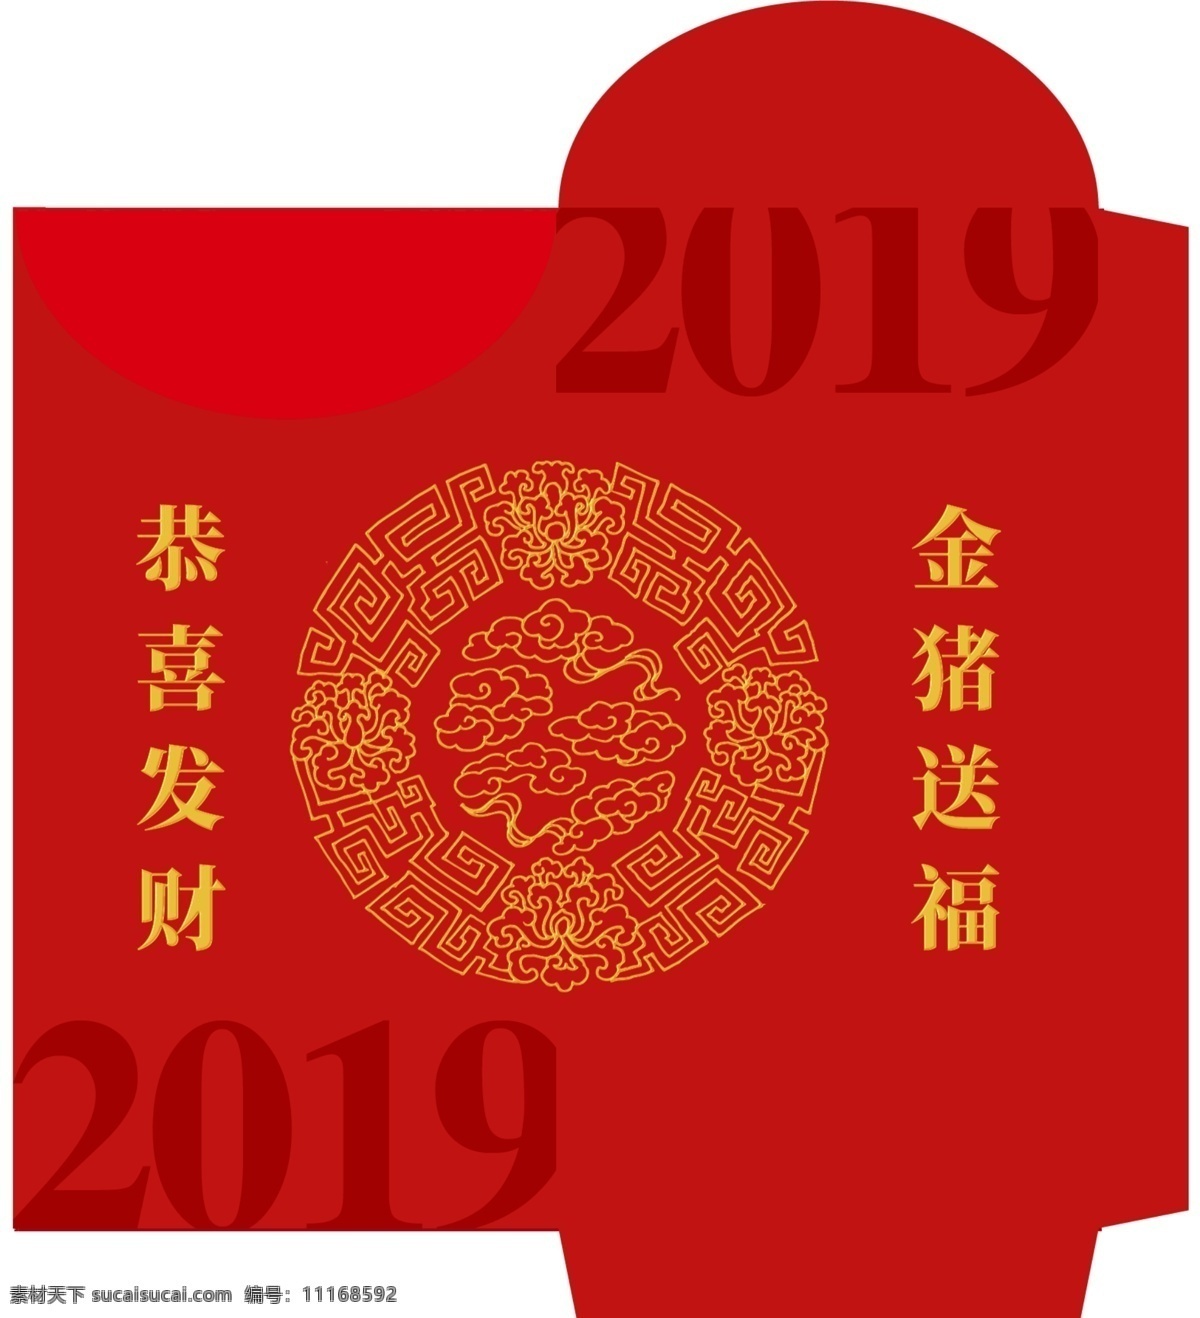 创意 中 国风 2019 猪年 红包 免费素材 平面素材 psd素材 平面模板 红包模板 创意中国风 创意红包